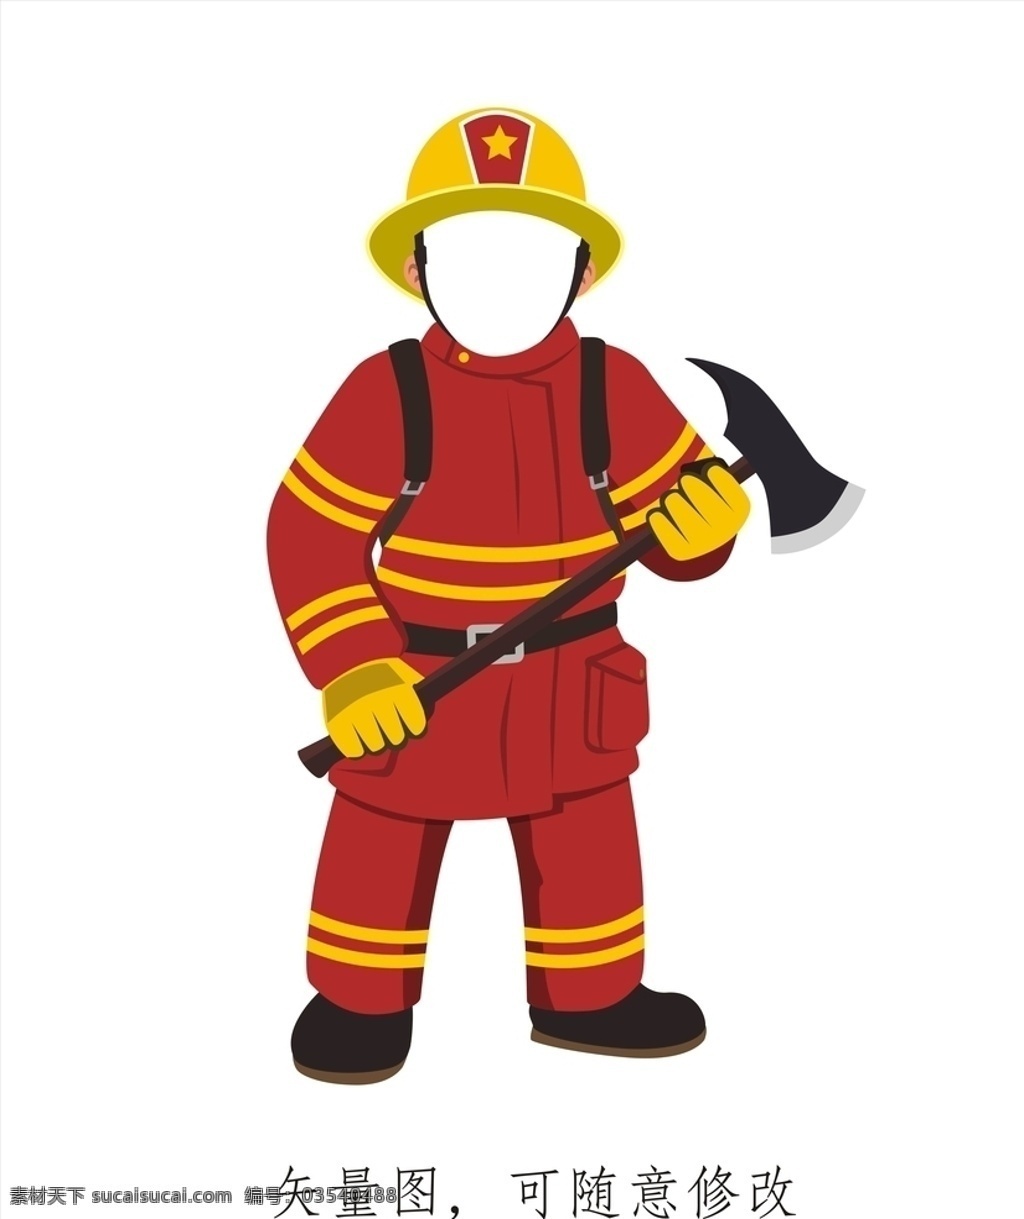 消防 人物造型 牌 消防人物 消防素材 消防队 灭火 消防矢量图 矢量图人物 造型立牌 消防立牌 人物立牌